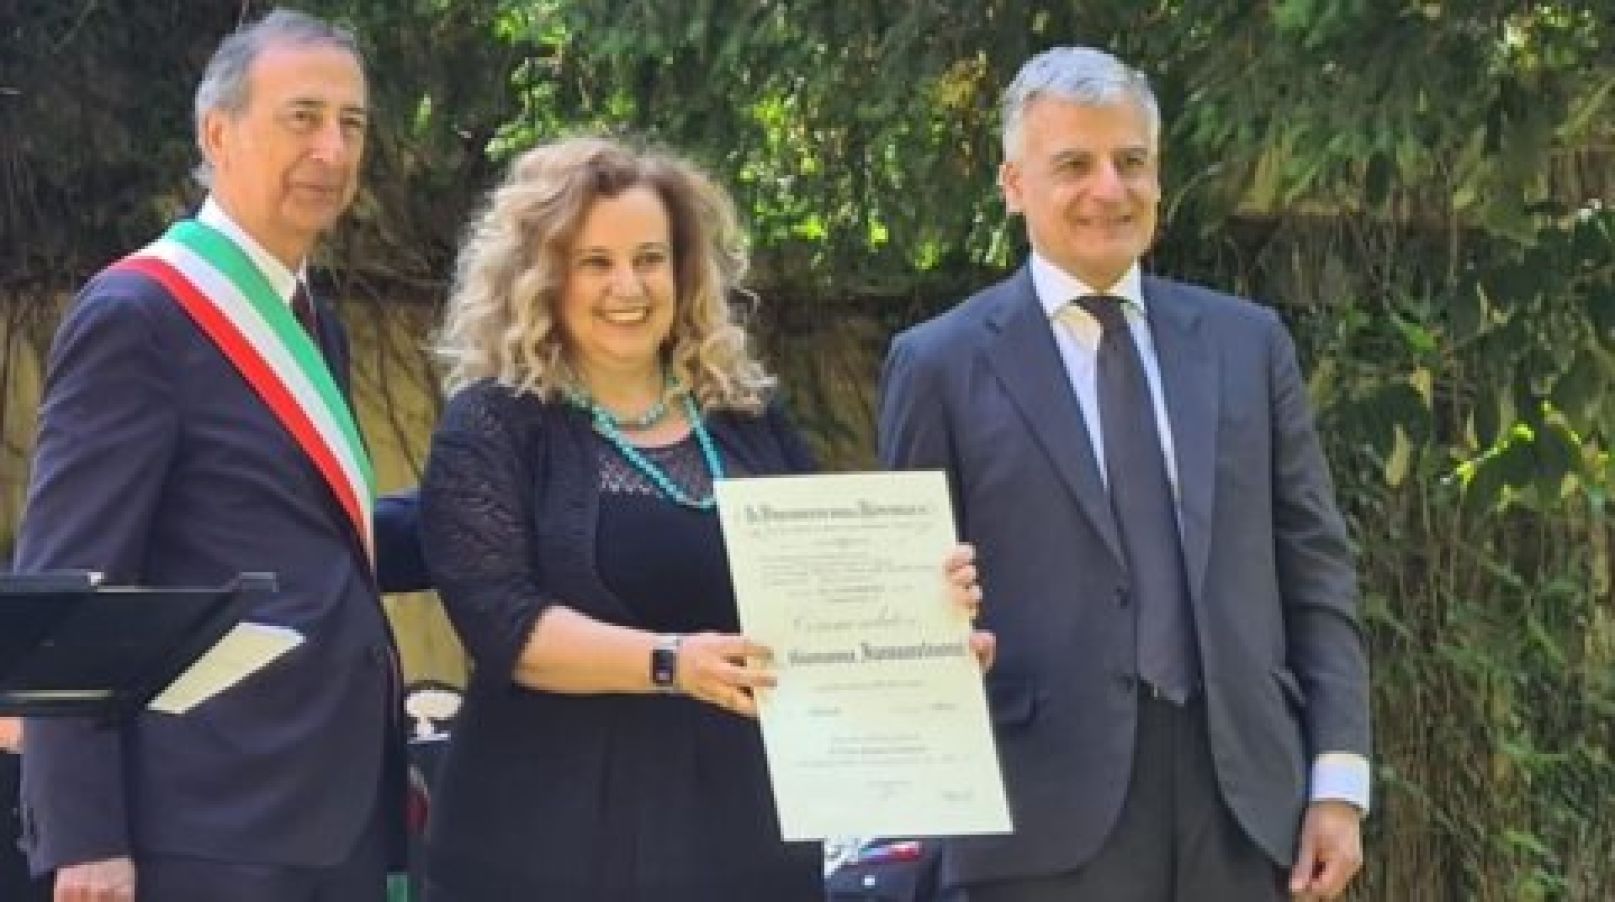 Giovanna Iannantuoni awarded the title of Commendatore dell'Ordine ‘al Merito della Repubblica Italiana’ (Commander of the Order of Merit of the Italian Republic)